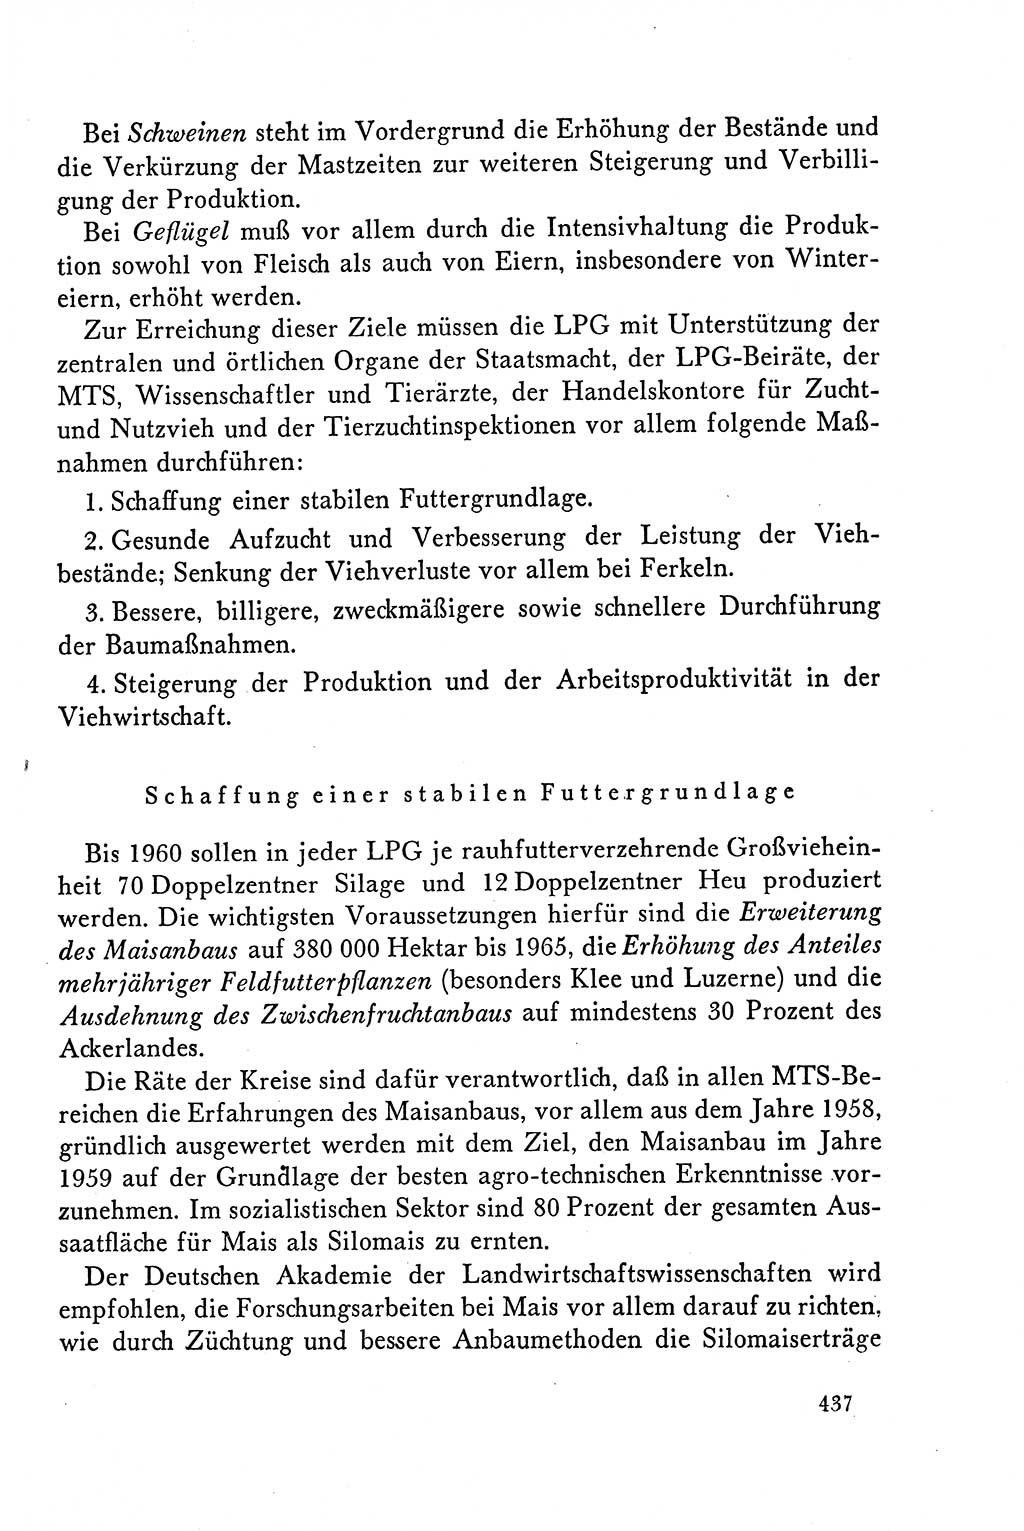 Dokumente der Sozialistischen Einheitspartei Deutschlands (SED) [Deutsche Demokratische Republik (DDR)] 1958-1959, Seite 437 (Dok. SED DDR 1958-1959, S. 437)